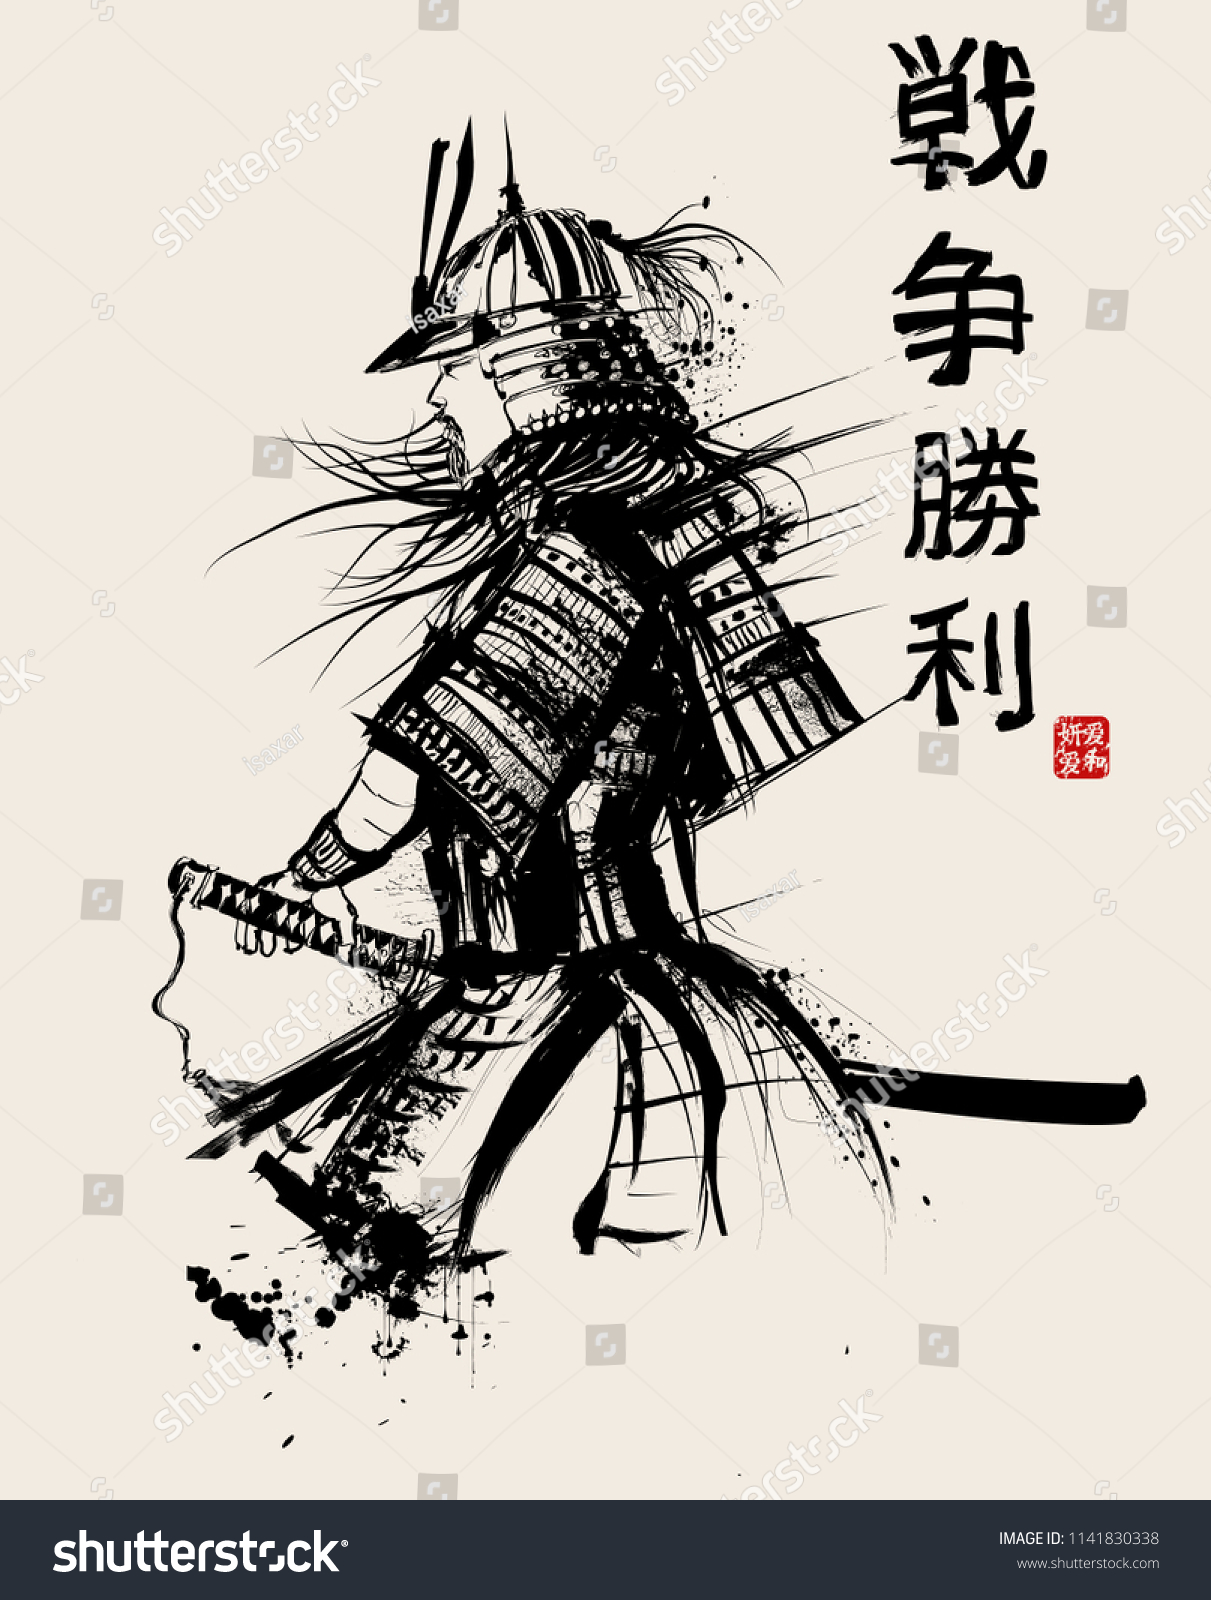 Меч самурая рисунок